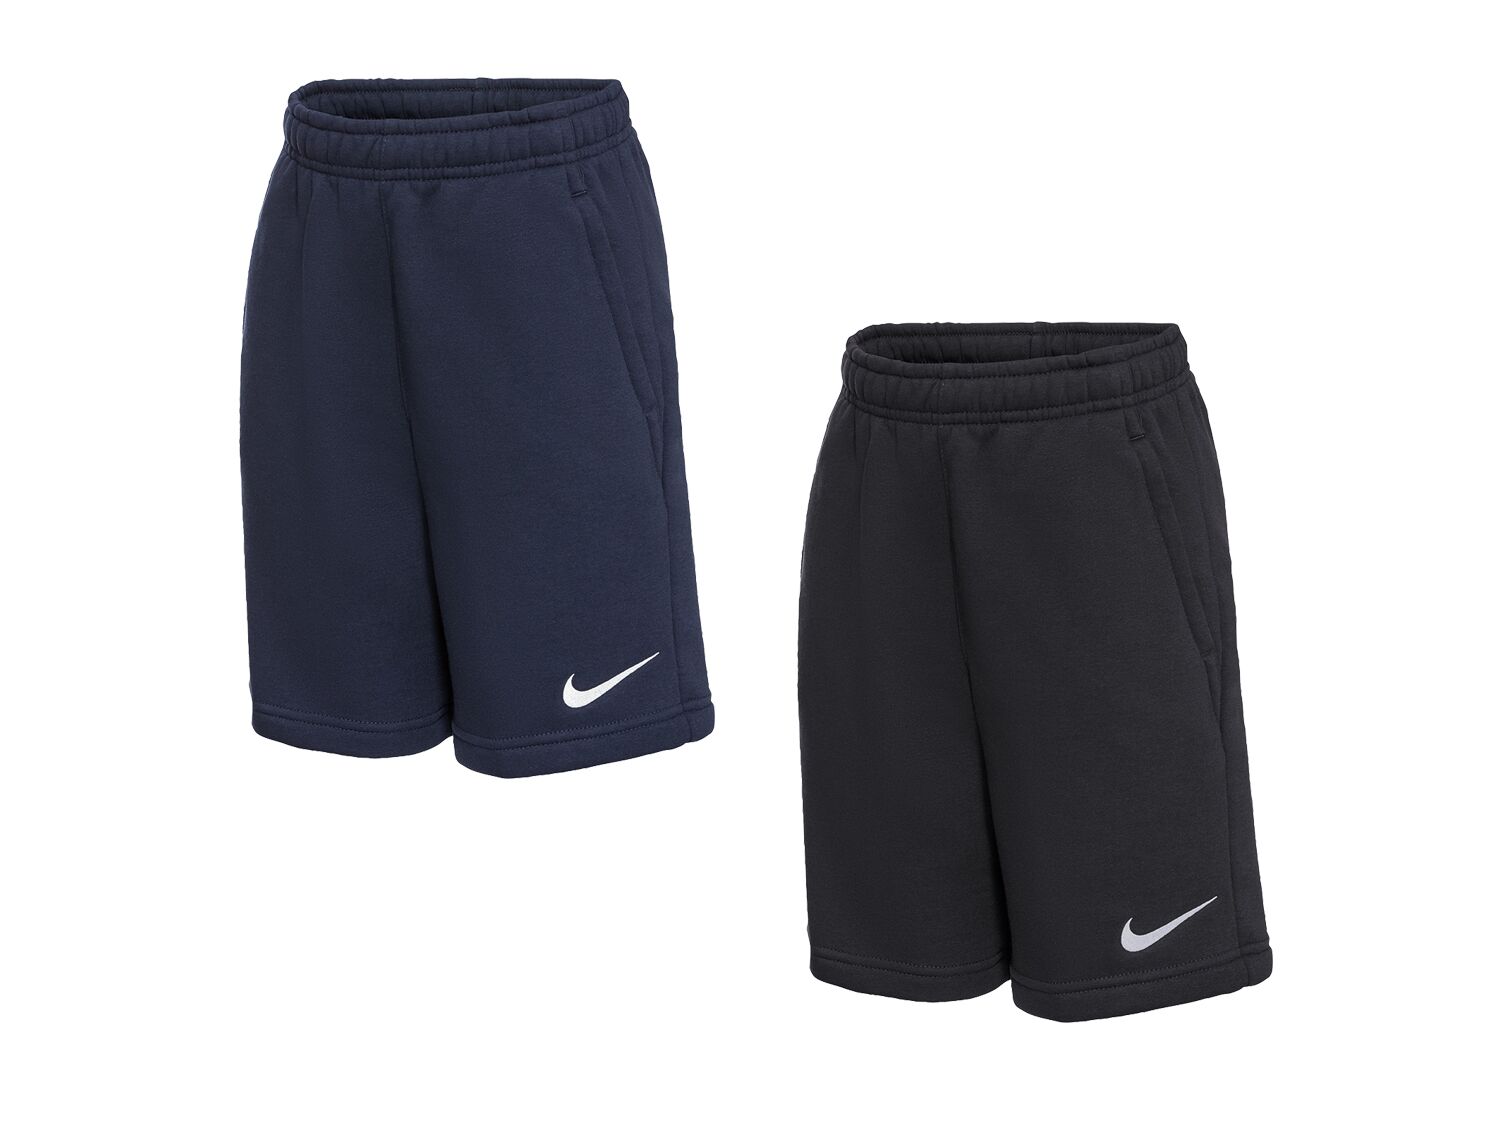 Nike Pantalón corto deportivo junior